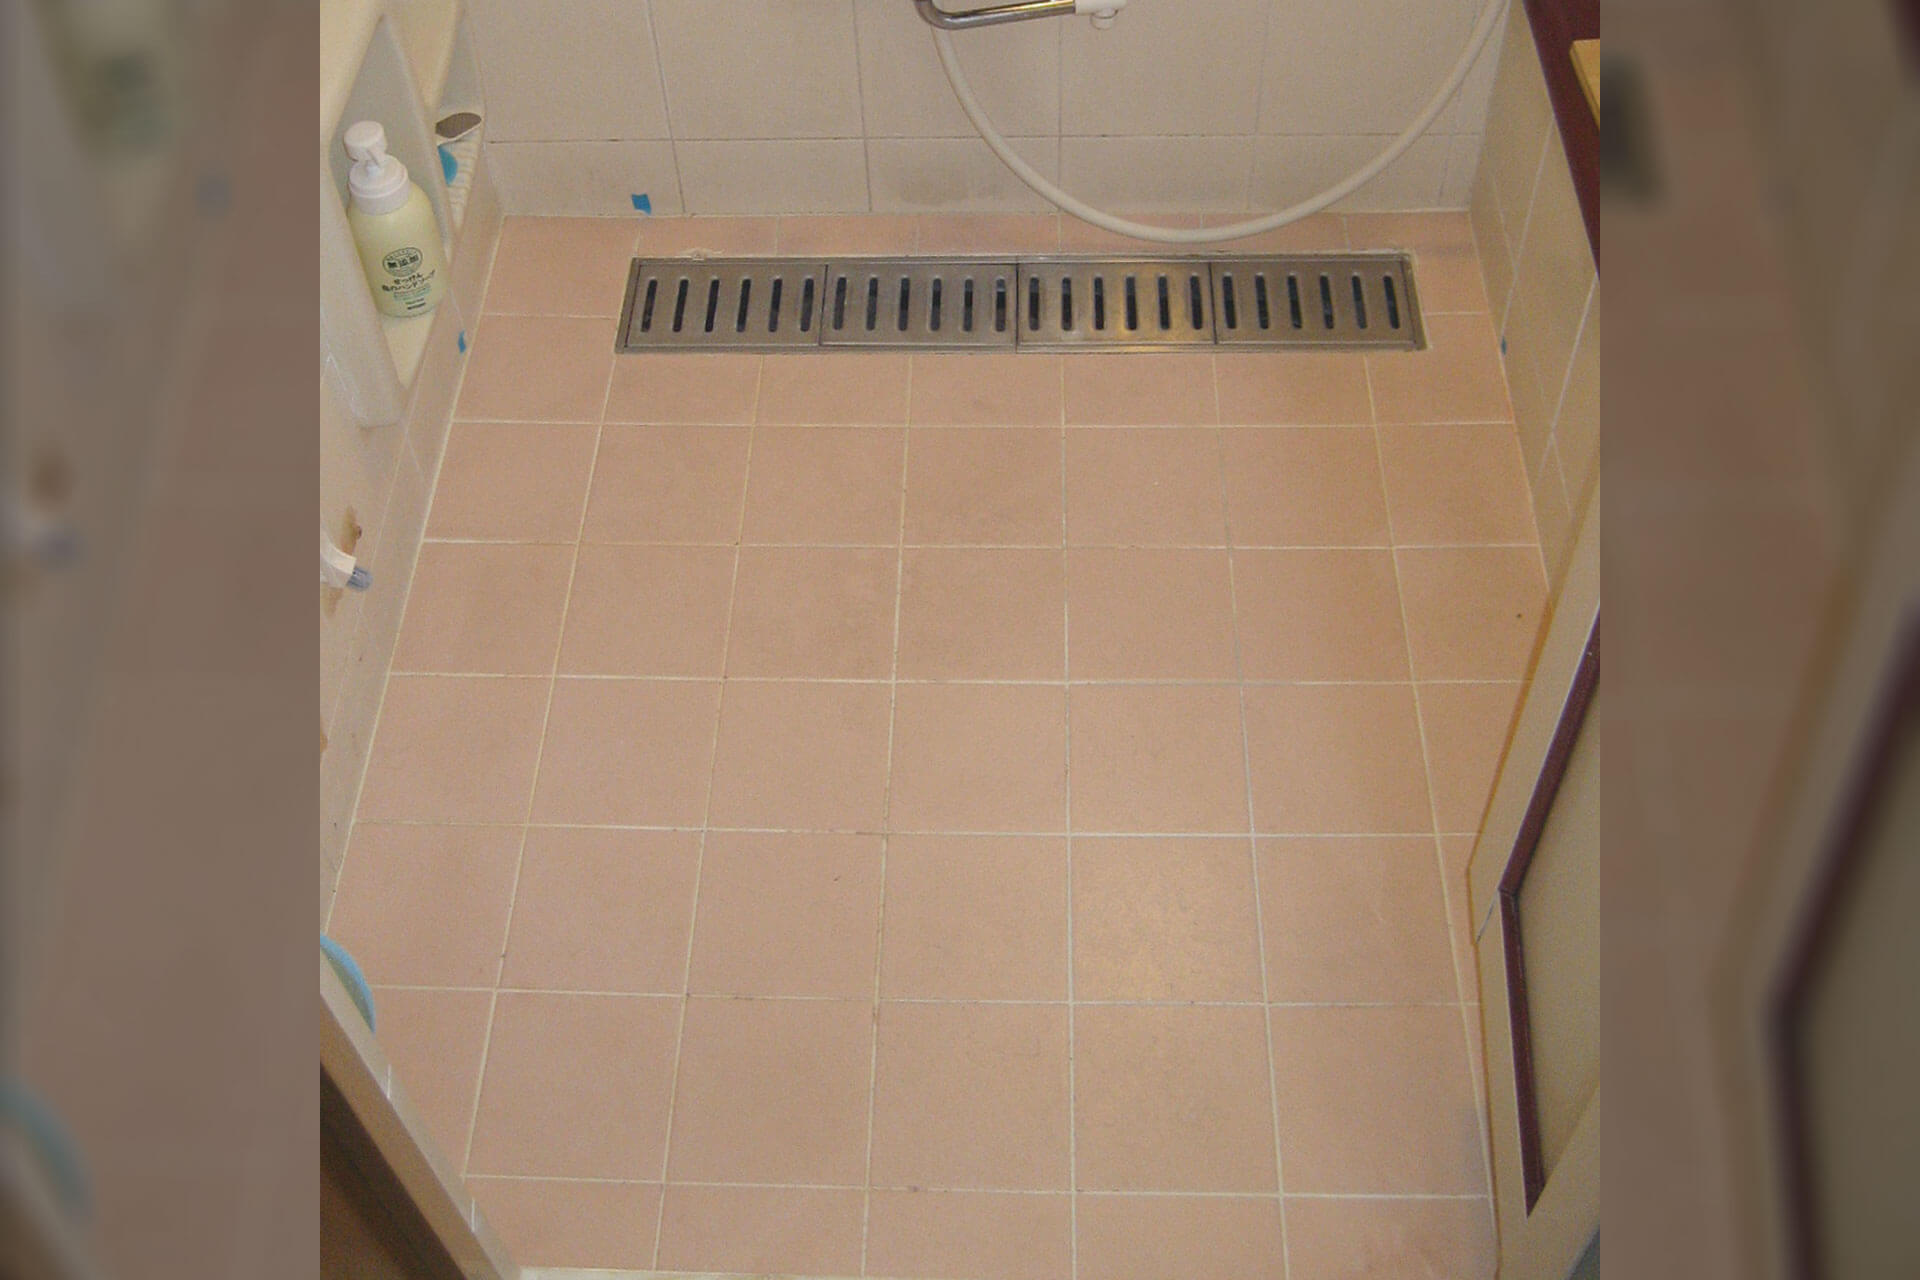 ハイブリッドストーン アベイラス スーパー浴室床材で改修する前のピンク色のタイル床